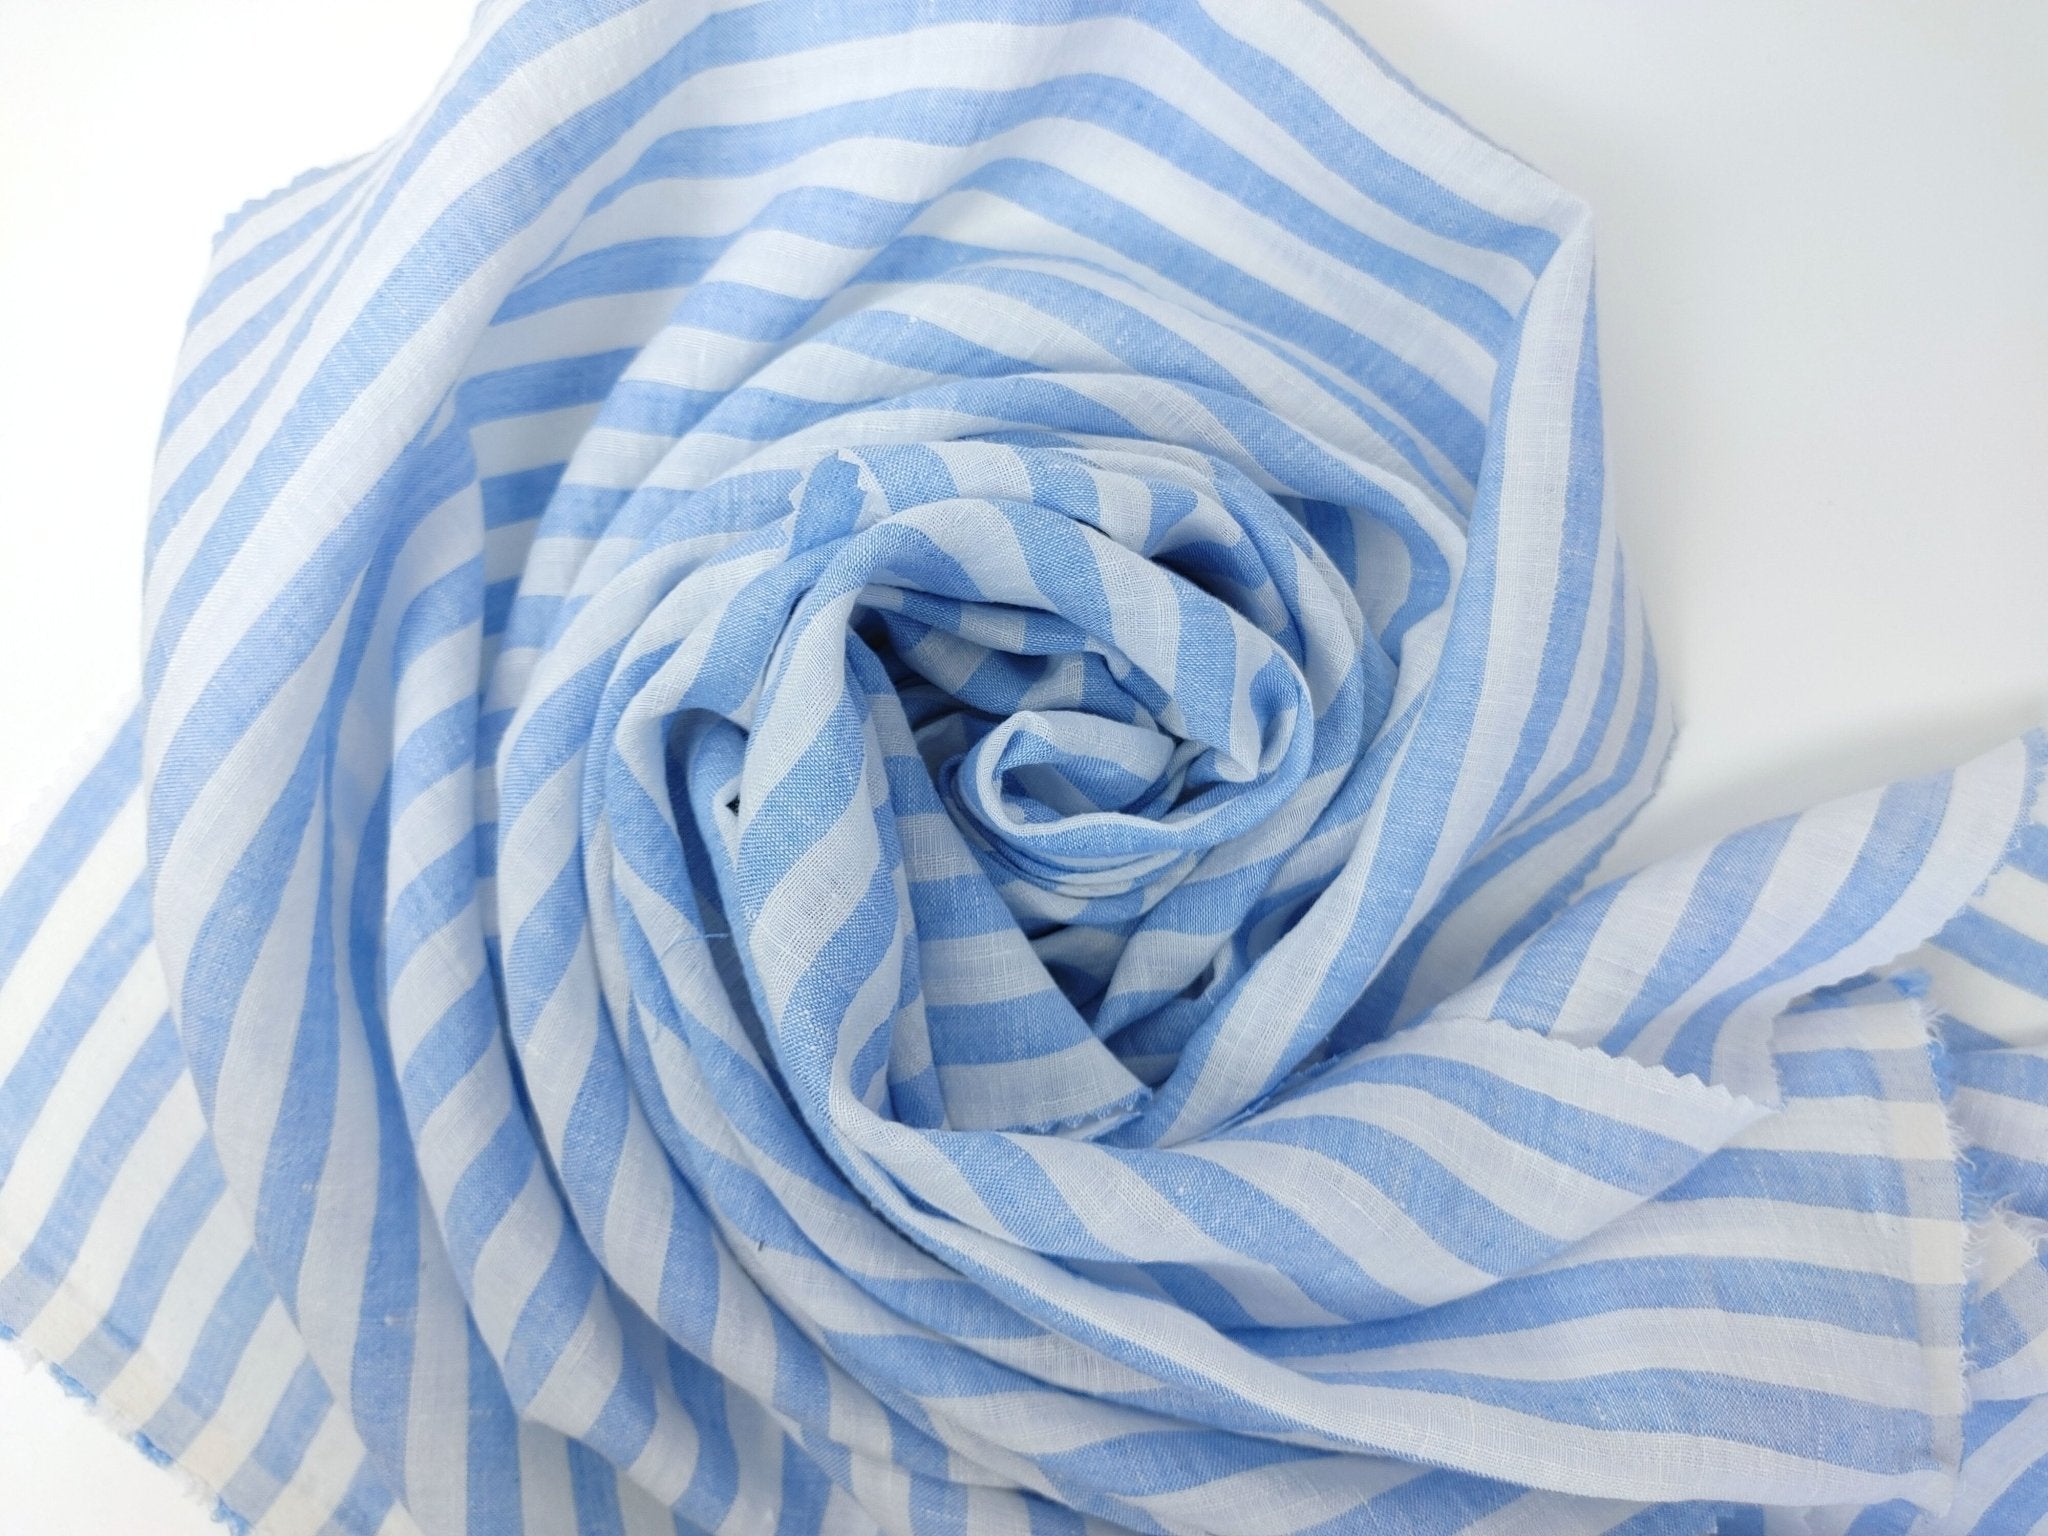 Linen Cotton Blue Horizontal Stripe Fabric Light Weight 7740 - The Linen Lab - Blue